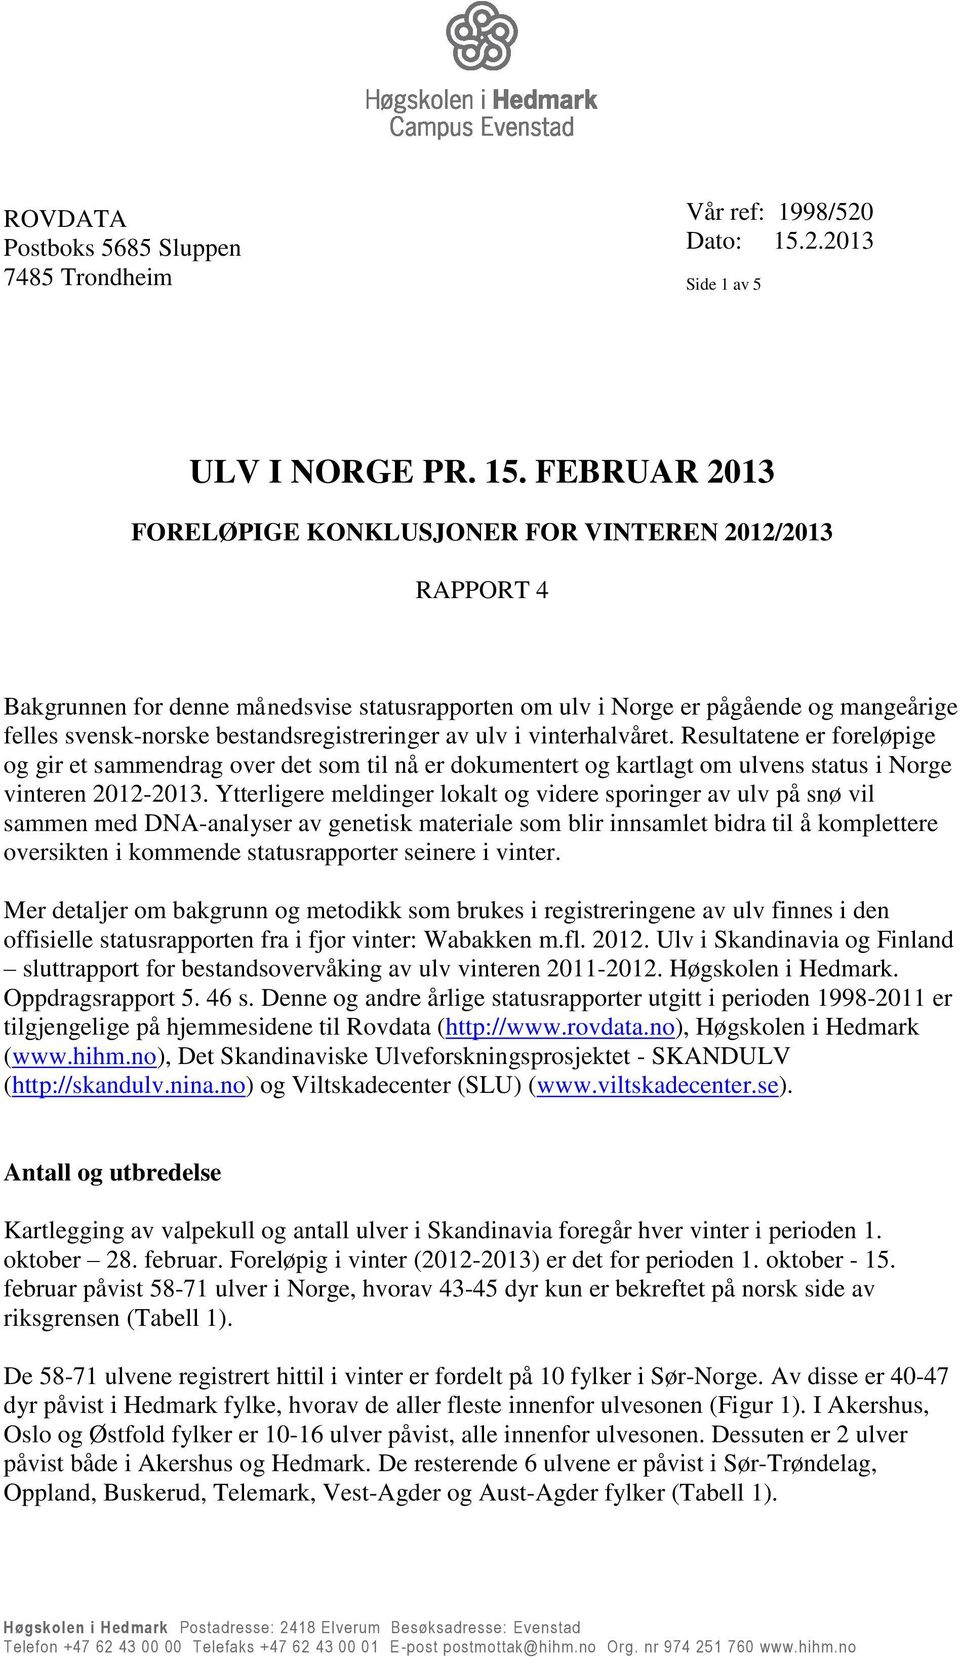 FEBRUAR 2013 FORELØPIGE KONKLUSJONER FOR VINTEREN 2012/2013 RAPPORT 4 Bakgrunnen for denne månedsvise statusrapporten om ulv i Norge er pågående og mangeårige felles svensk-norske